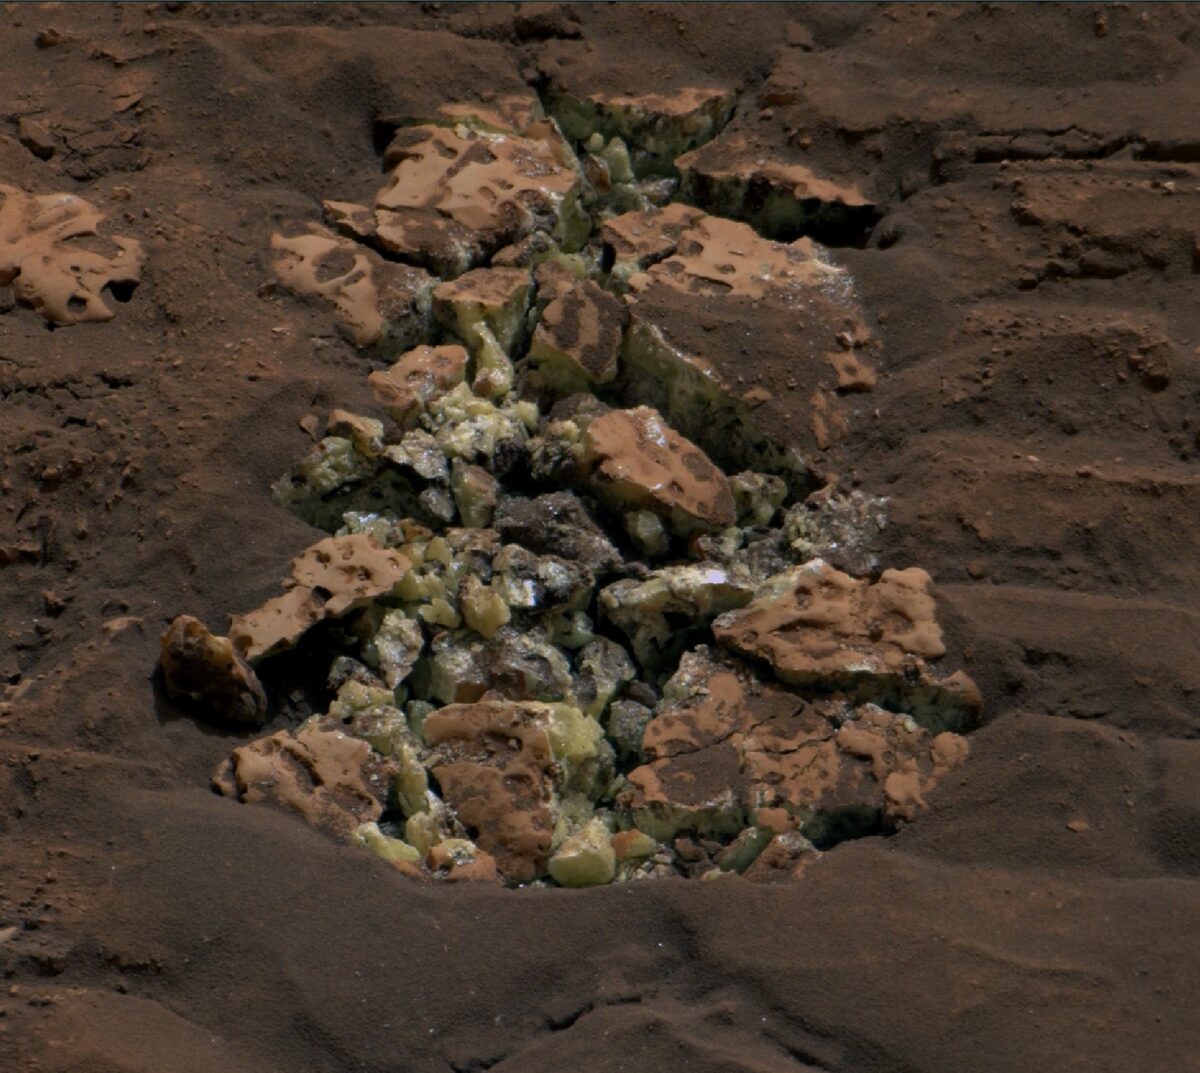 Marsjański łazik rozbił tamtejszą skałę. “To jak znalezienie oazy na pustyni”